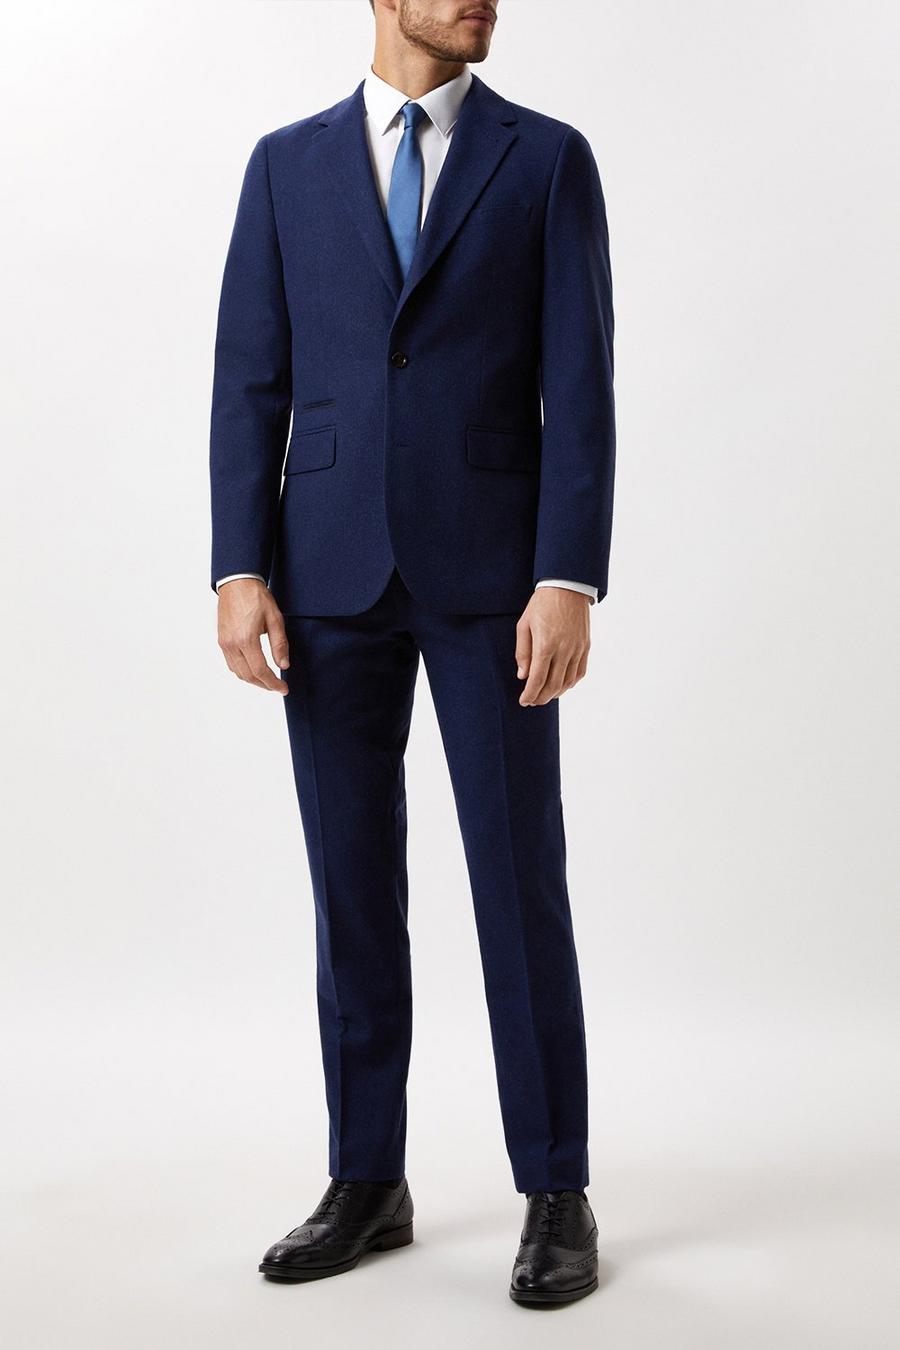 Slim Fit Navy Tweed Three - Piece Suit